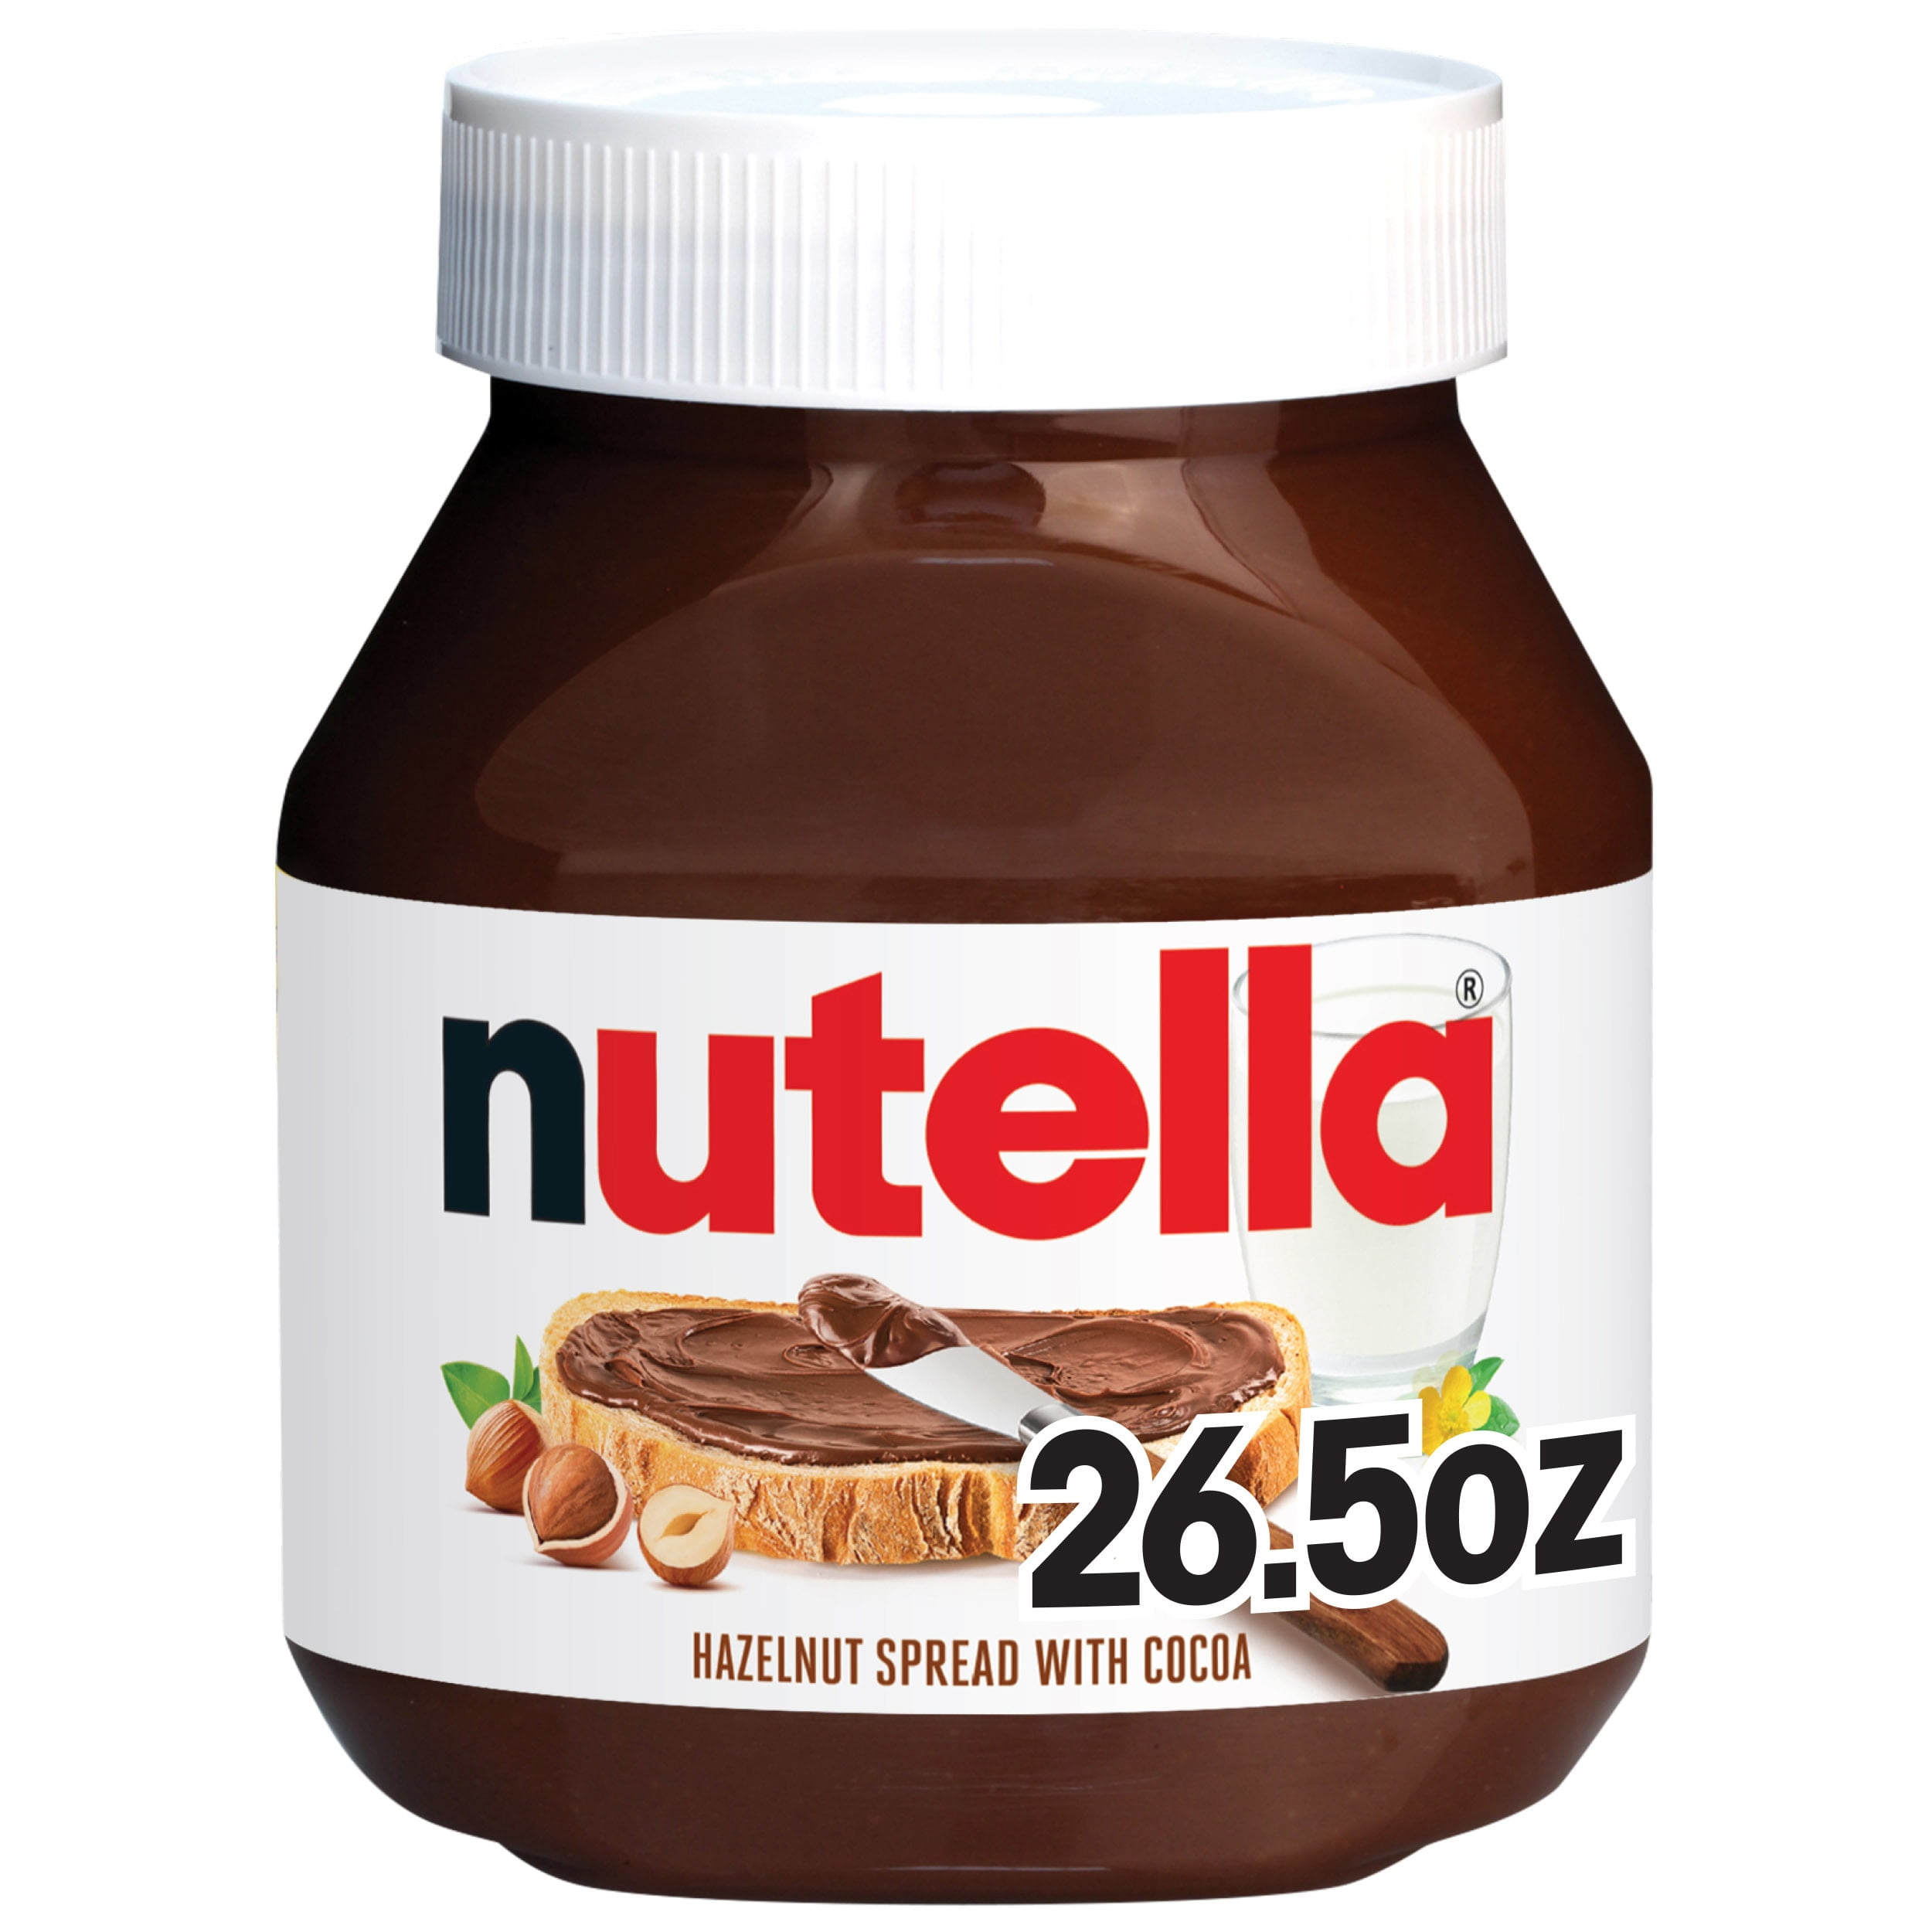 🍫NUTELLA MINI‼️ 👉🏼 Disponible Nutella mini 25g 💲PRECIO: 1.30